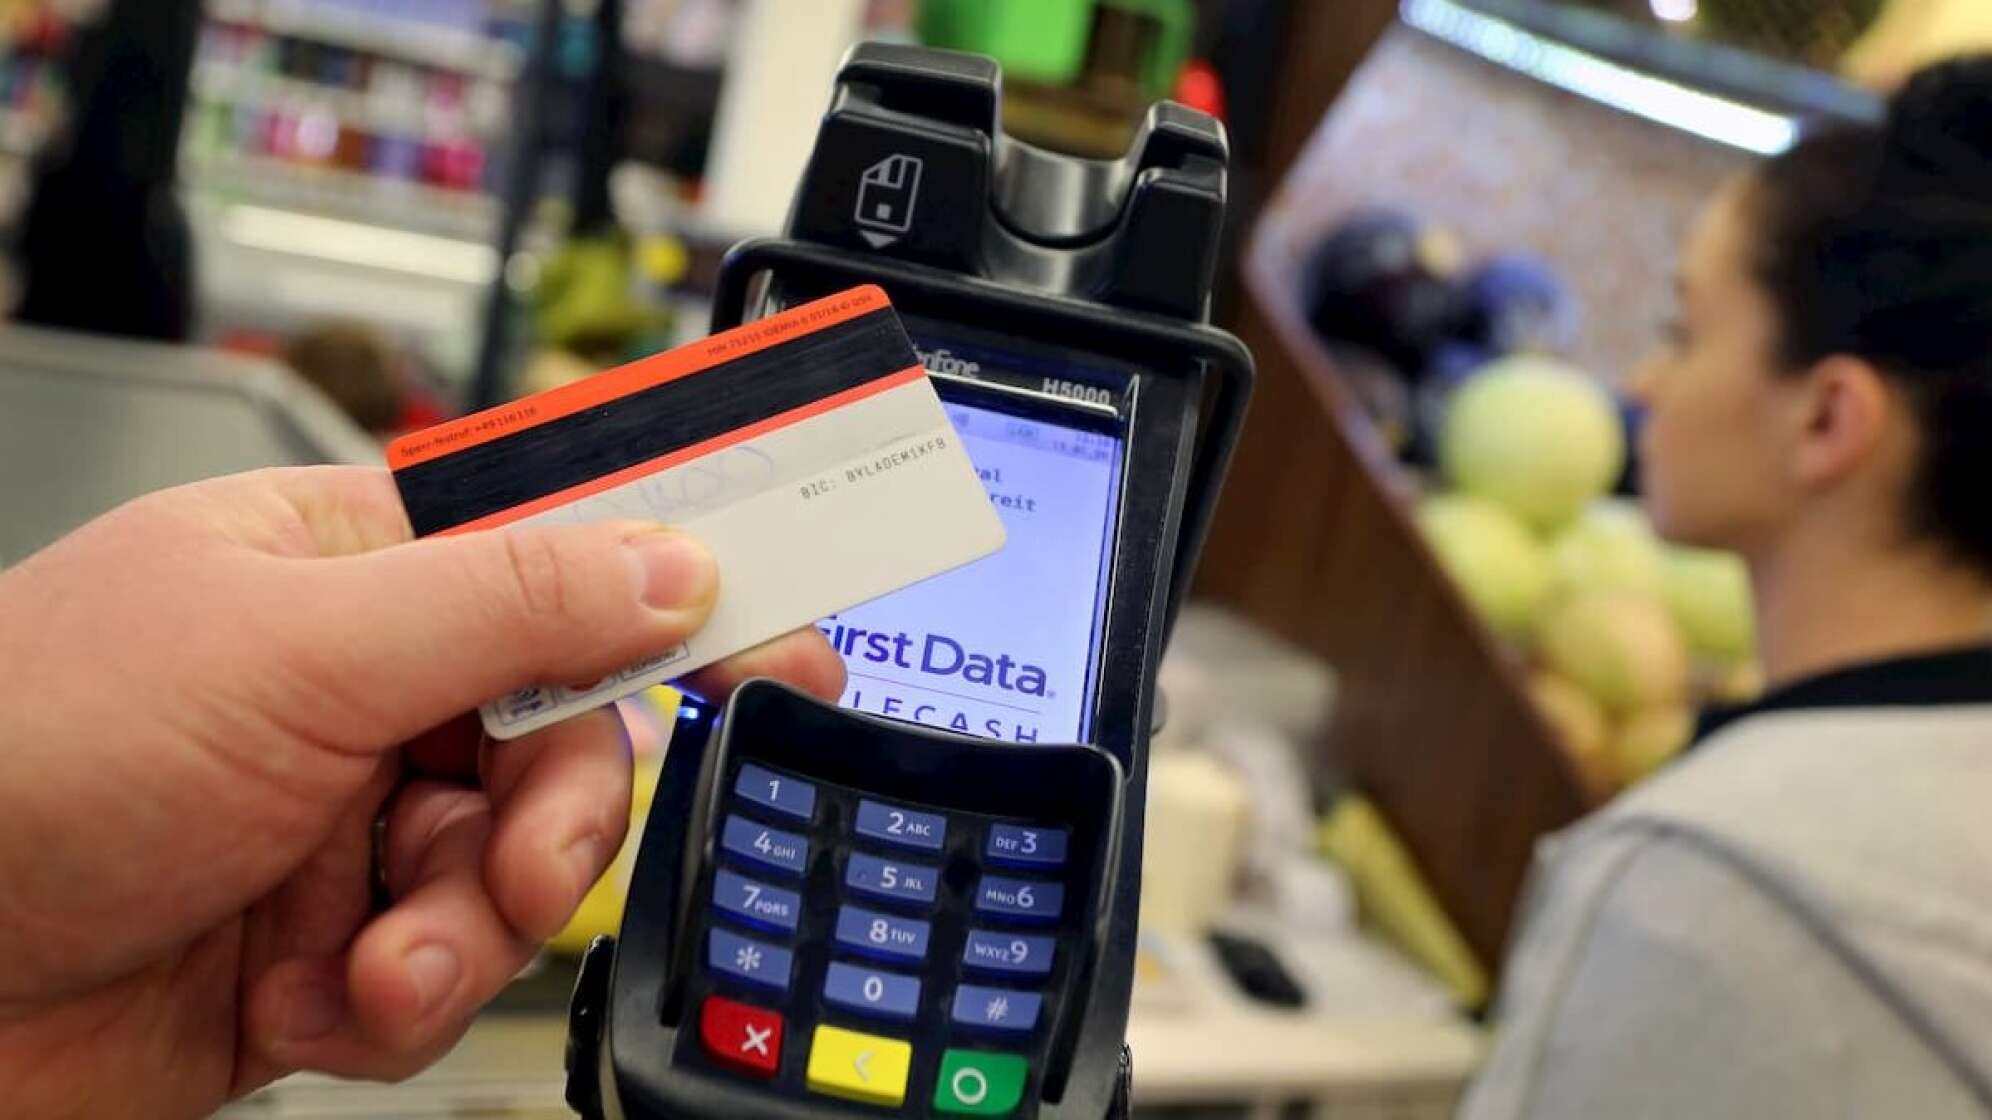 Eine Kreditkarte wird vor ein Kartenlesegerät gehalten in einem Supermarkt